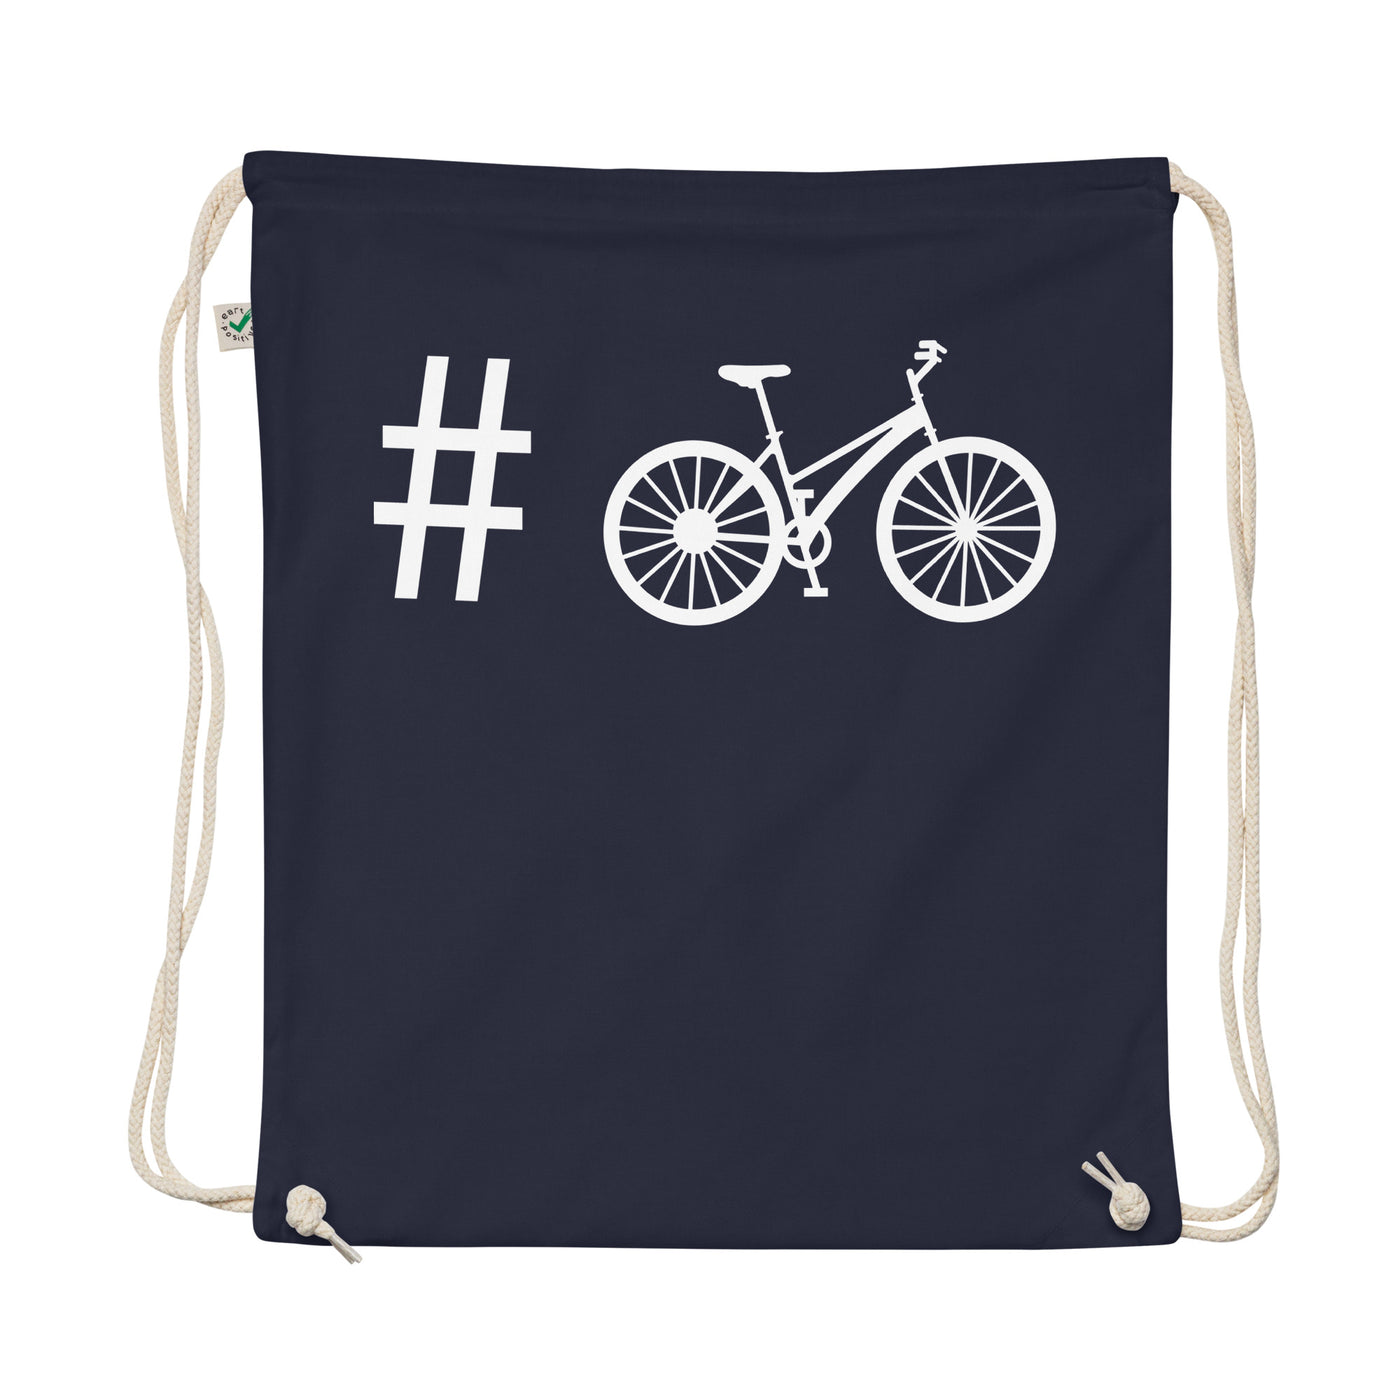 Hashtag - Cycling - Organic Turnbeutel fahrrad